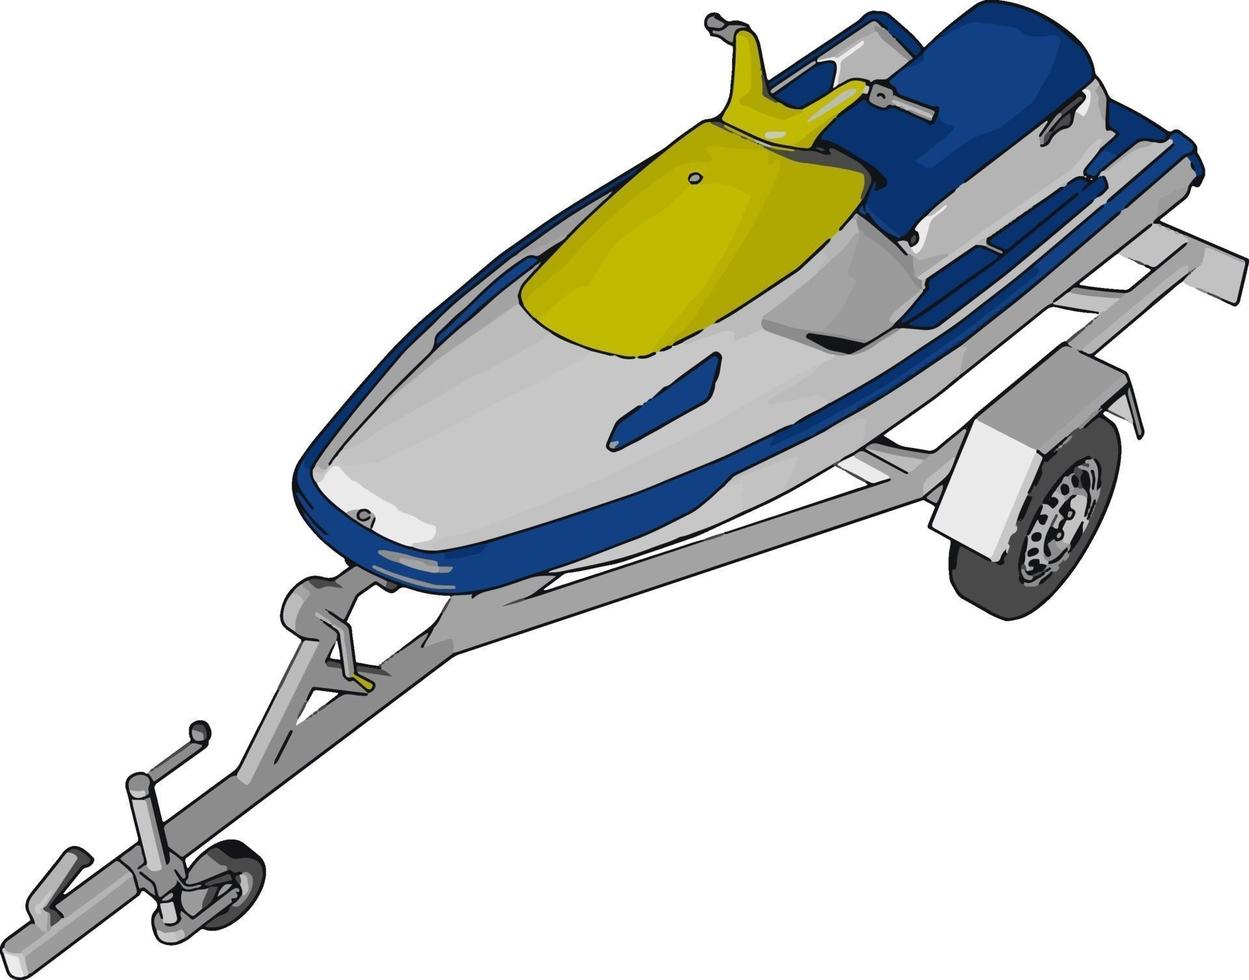 blu Moto d'acqua, illustrazione, vettore su bianca sfondo.